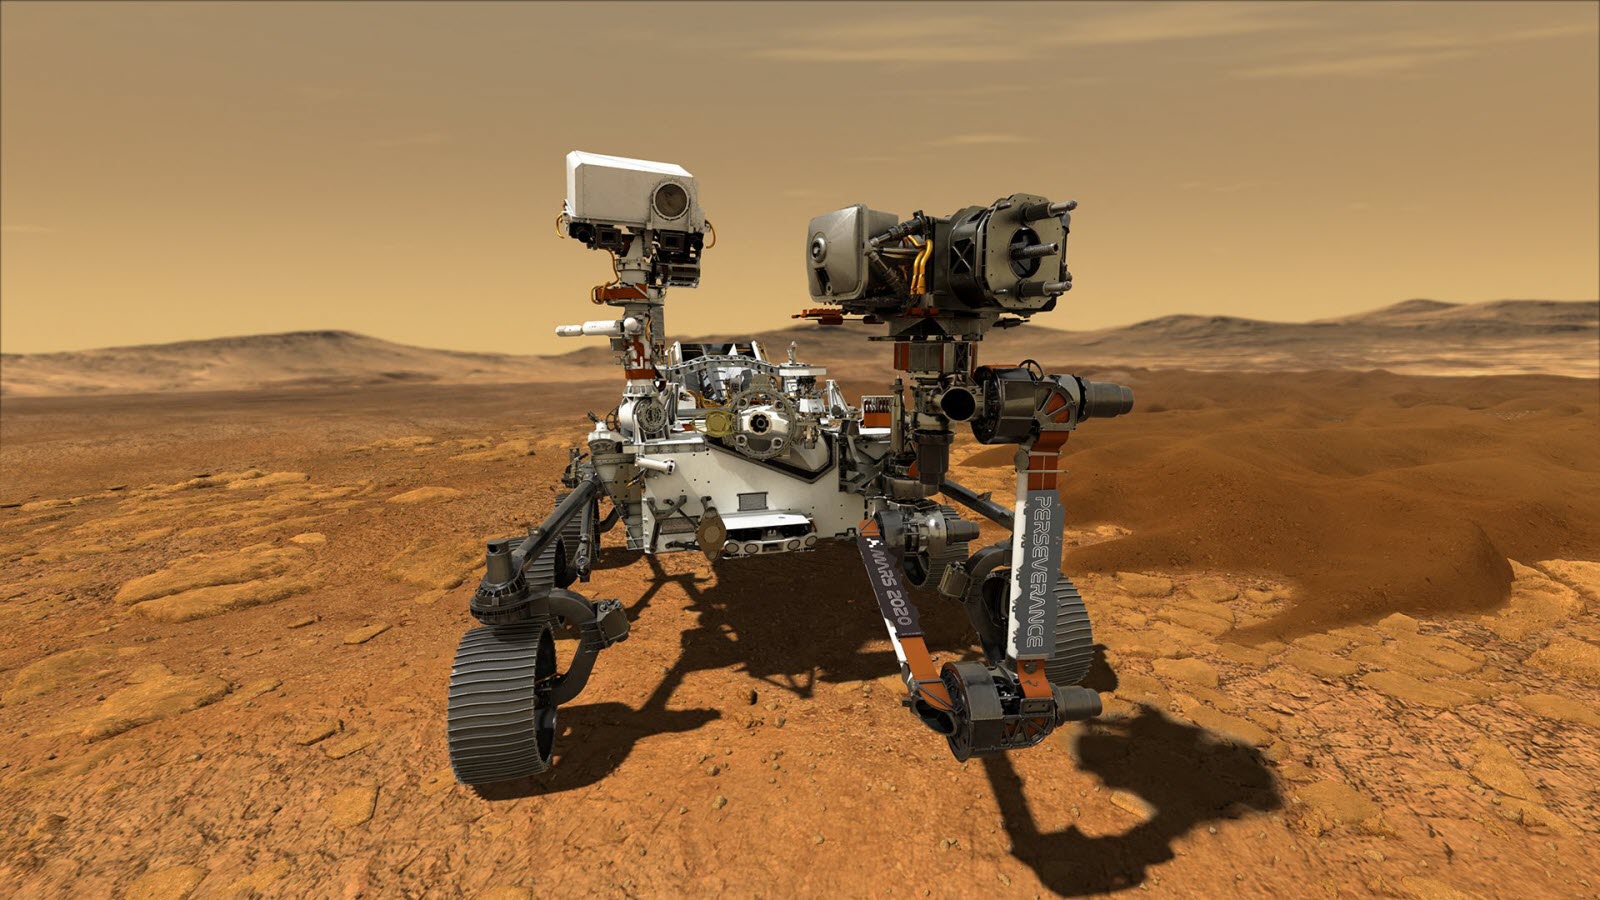 Marte aveva abbastanza carbonio organico per la vita, gli scienziati della NASA decifrano i dati da Curiosity